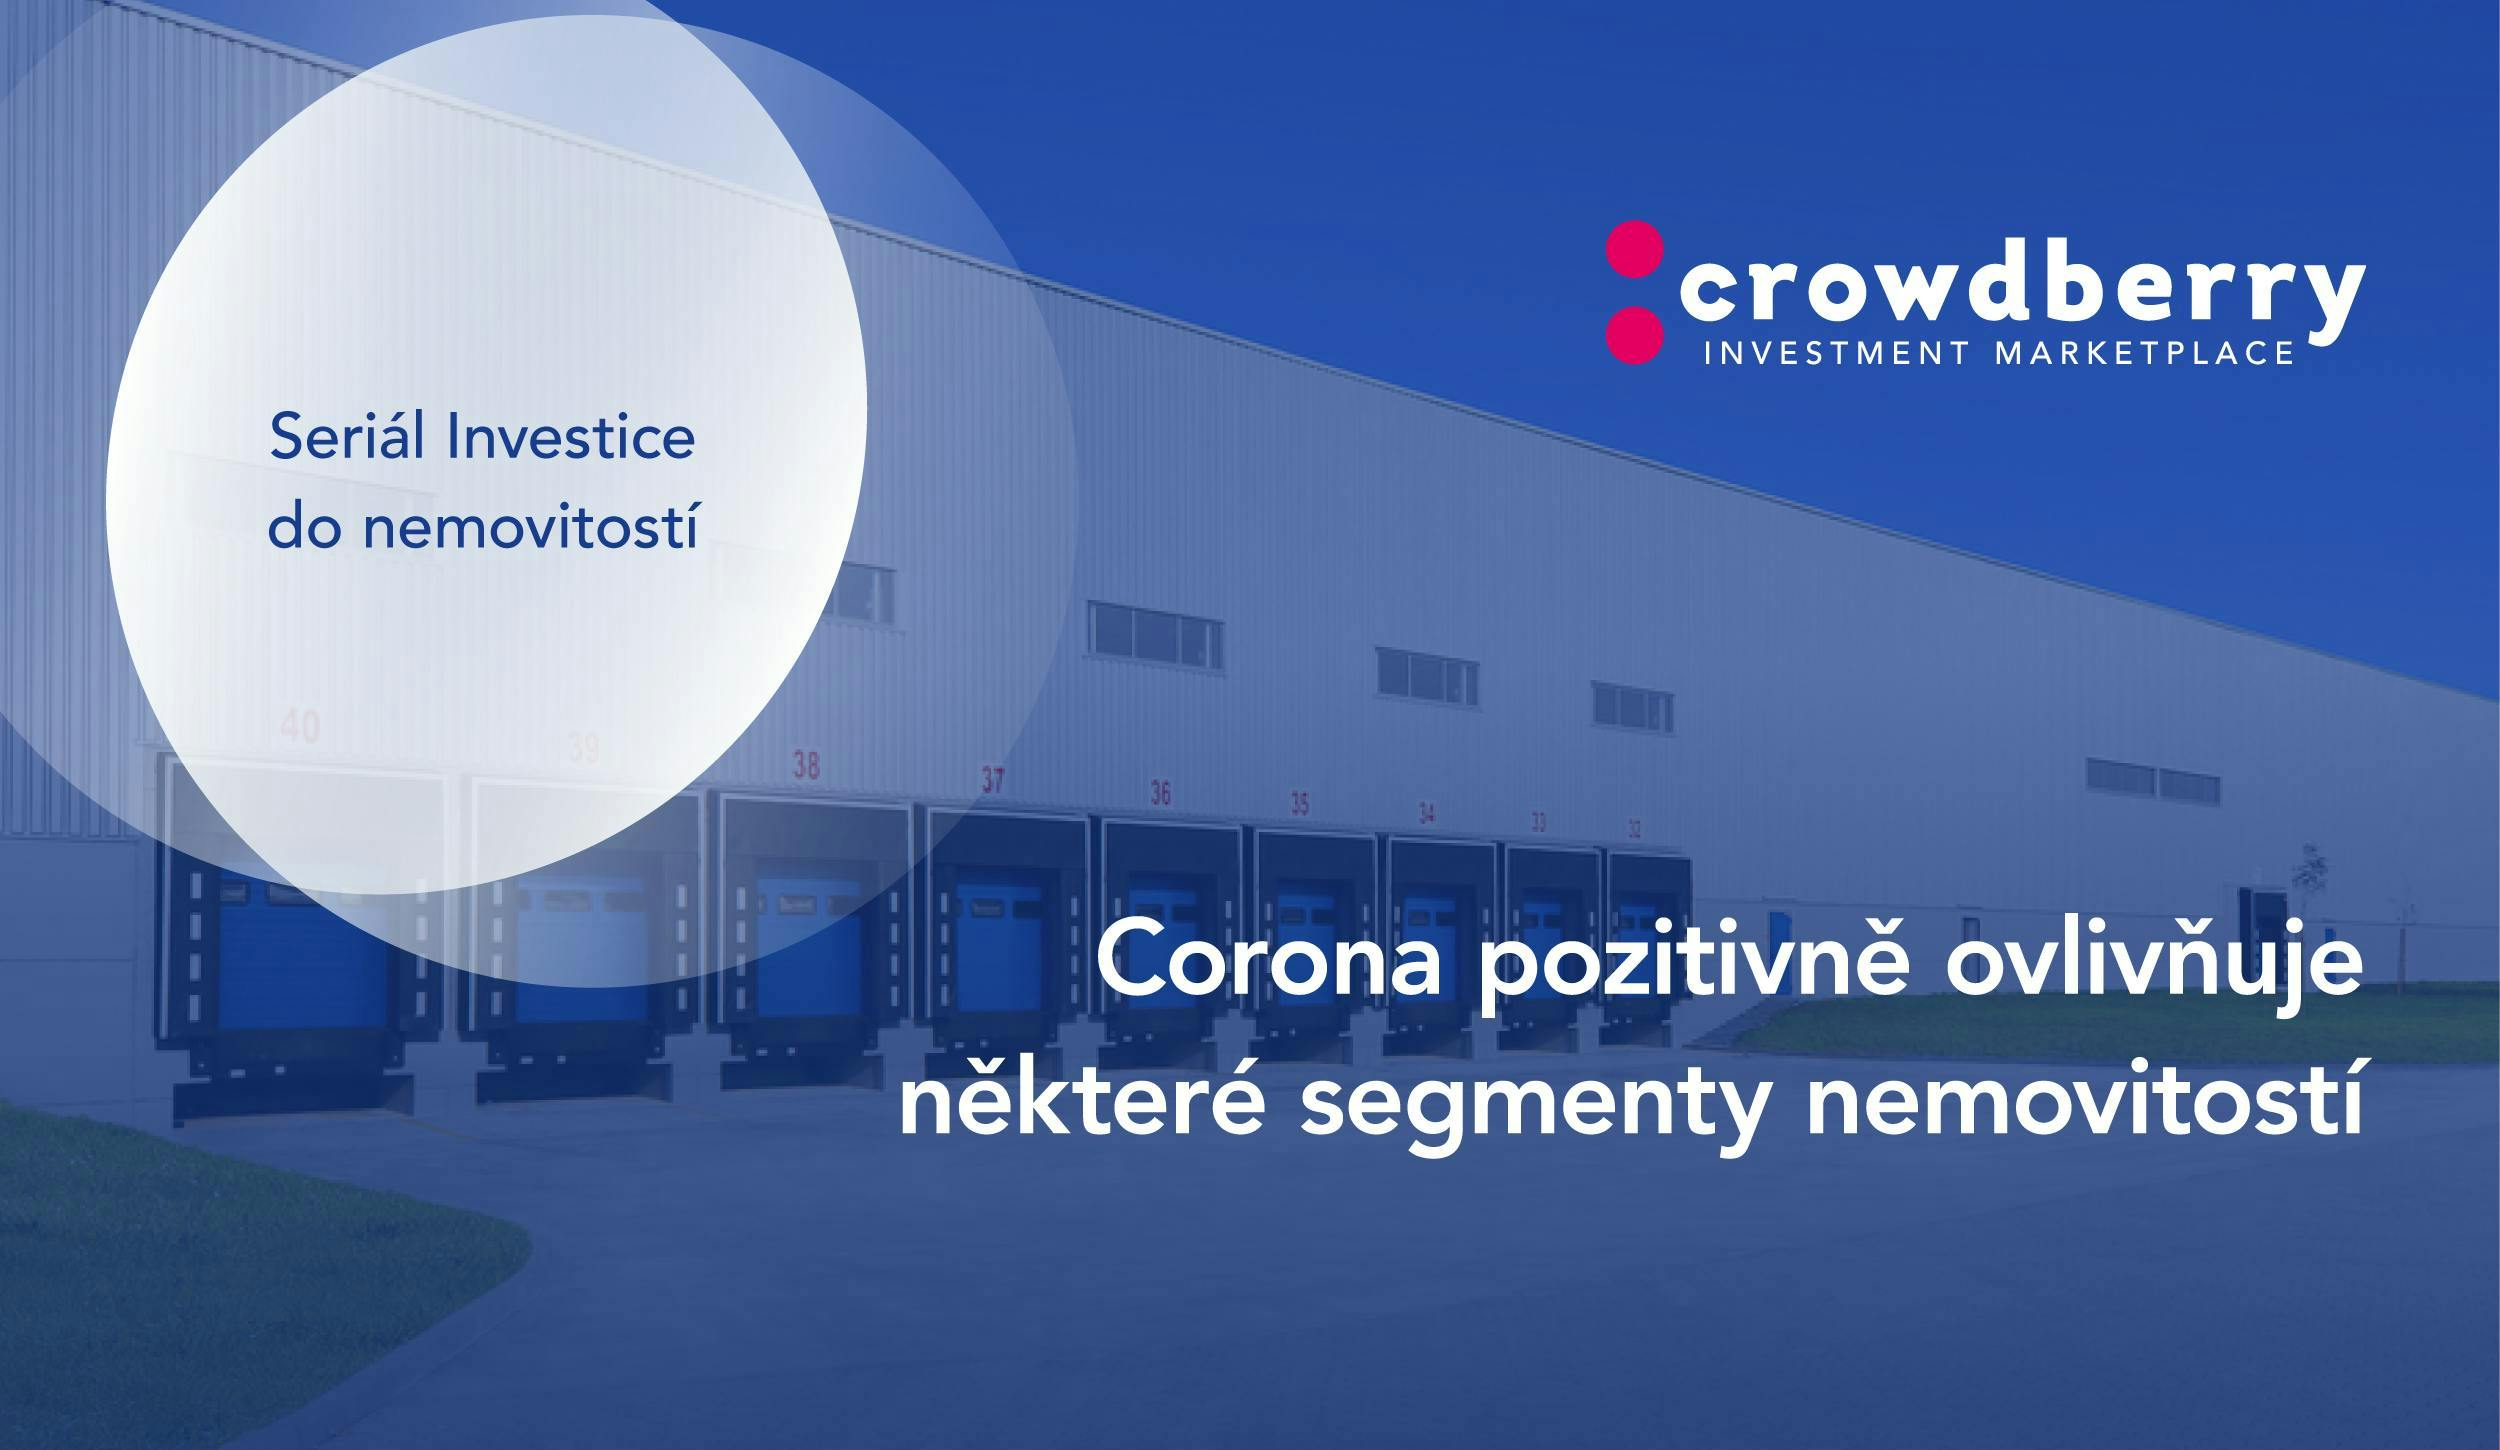 Corona pozitivně ovlivňuje některé segmenty nemovitostí